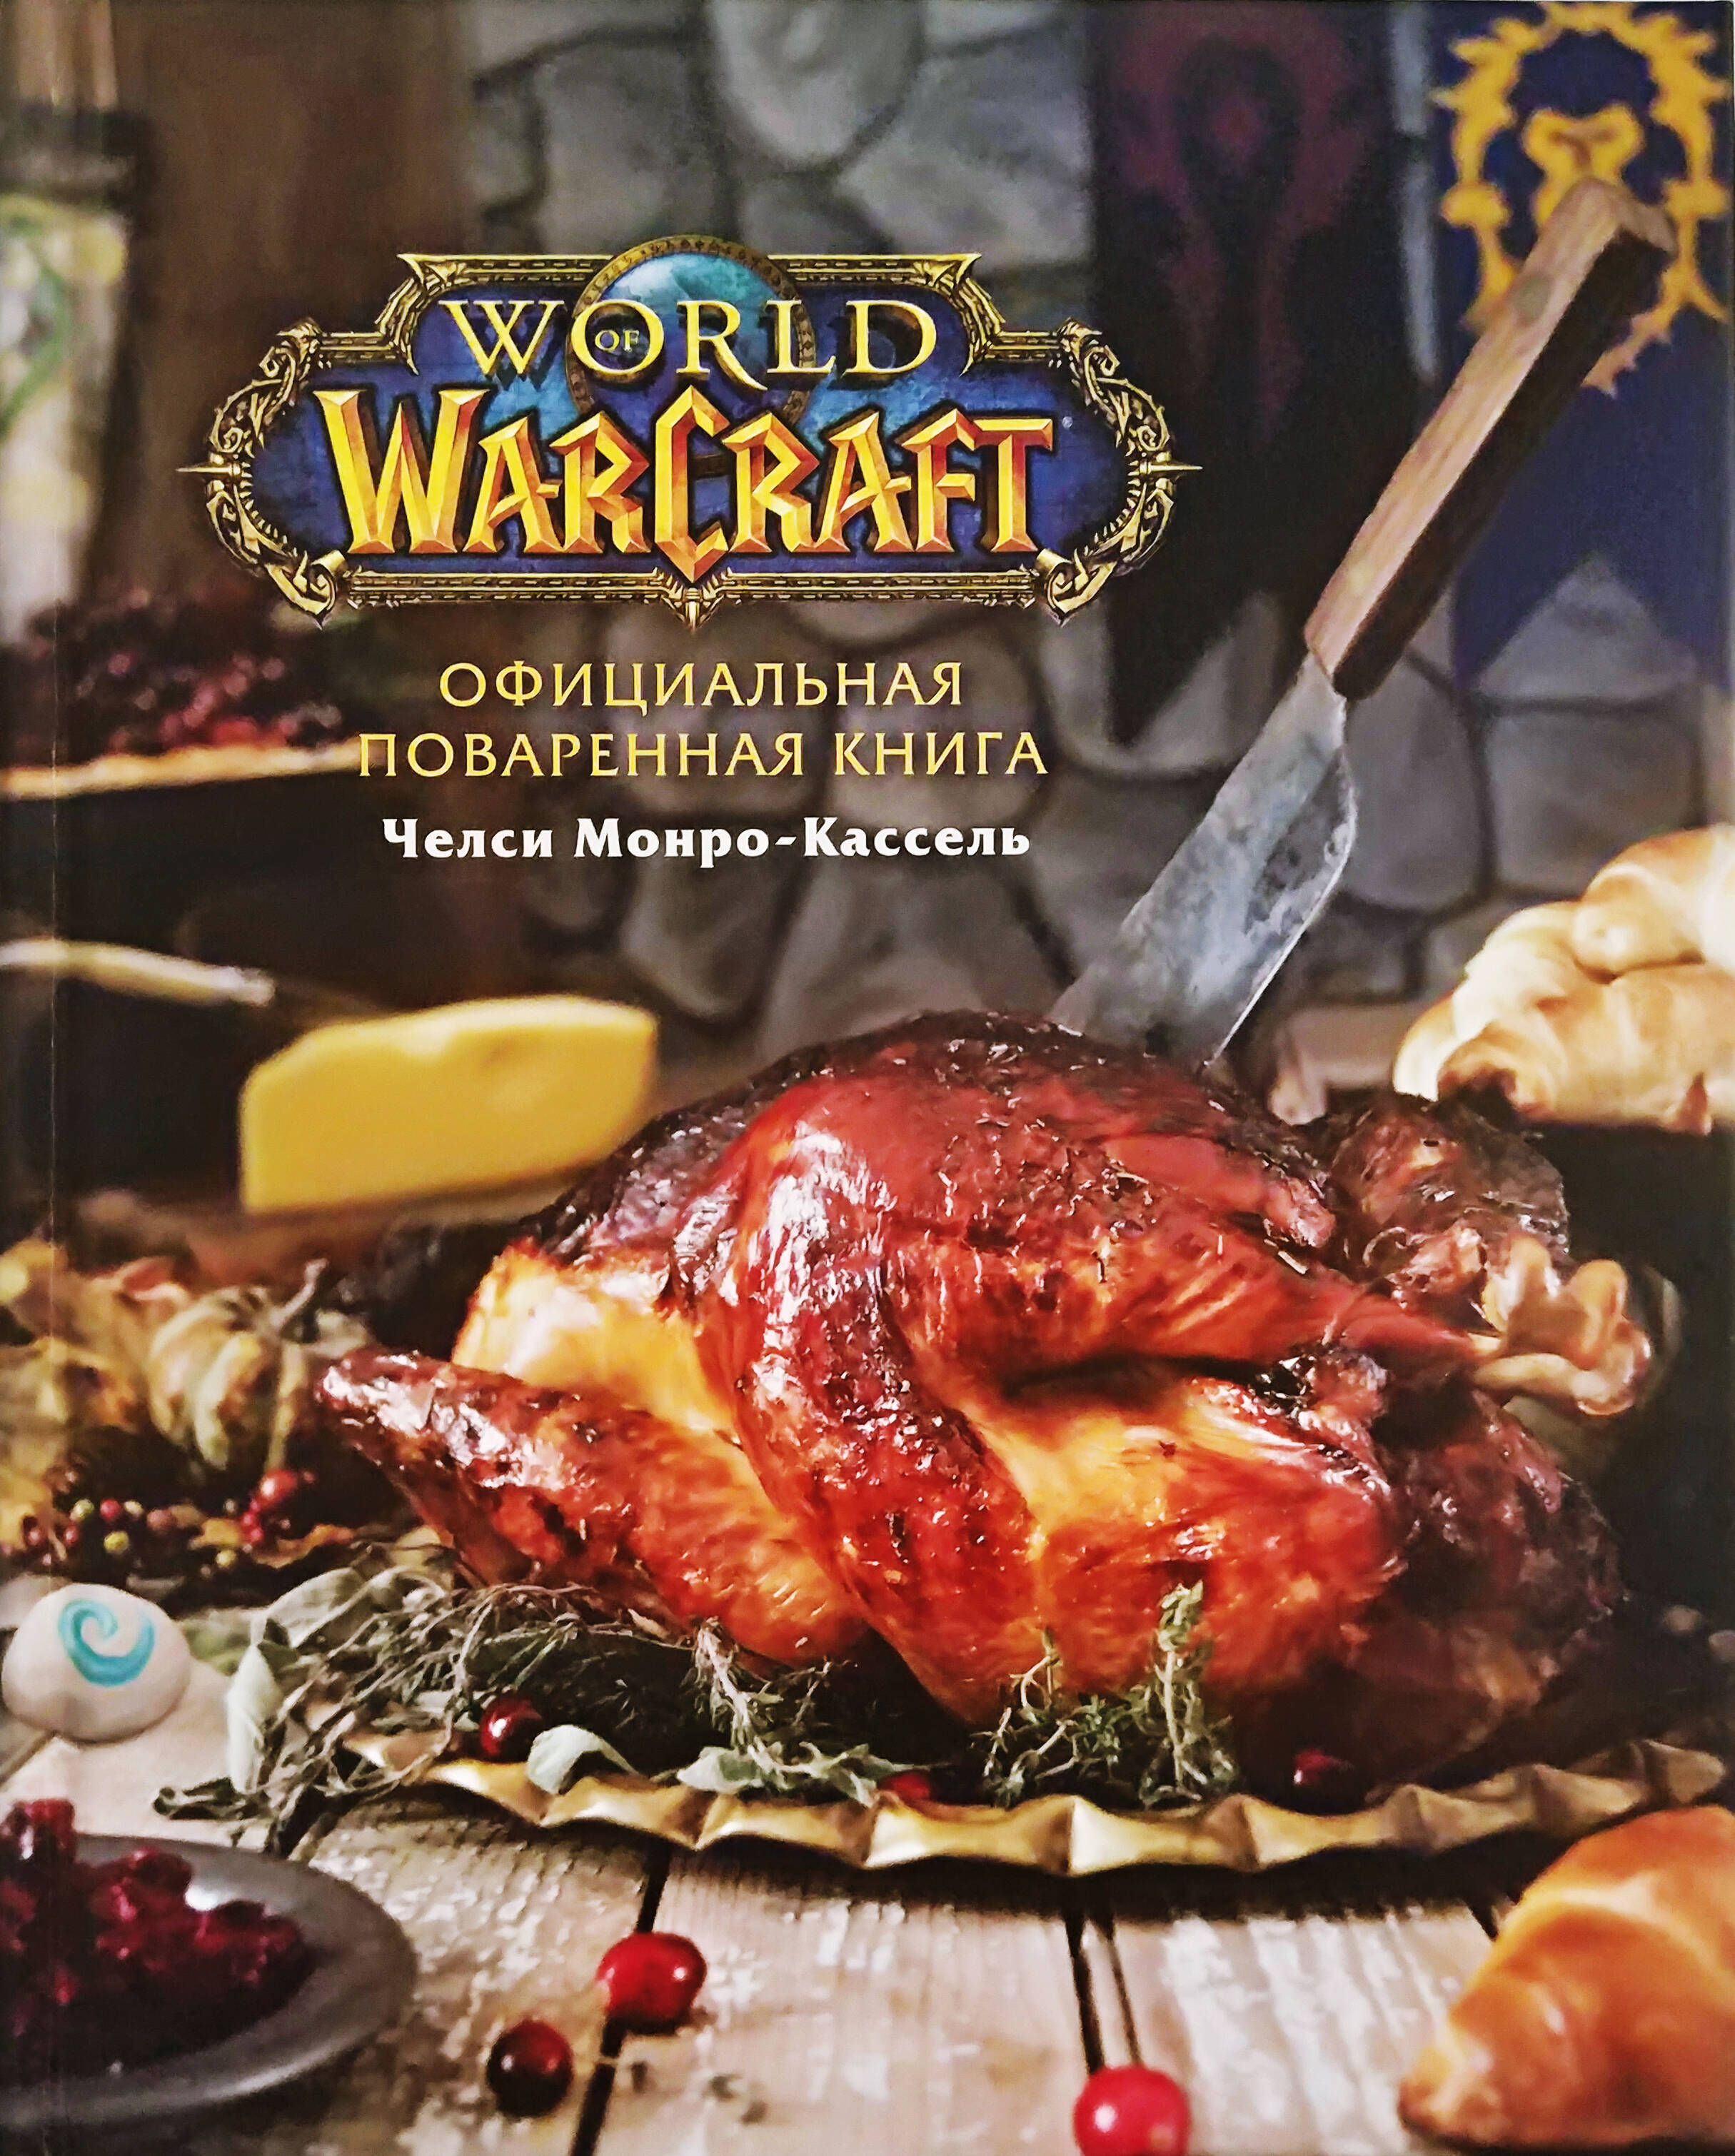 Монро-Кассель Челси Официальная поваренная книга World of Warcraft набор fallout официальная поваренная книга жителя убежища шоколад кэт 12 как дожить до пенсии 60г